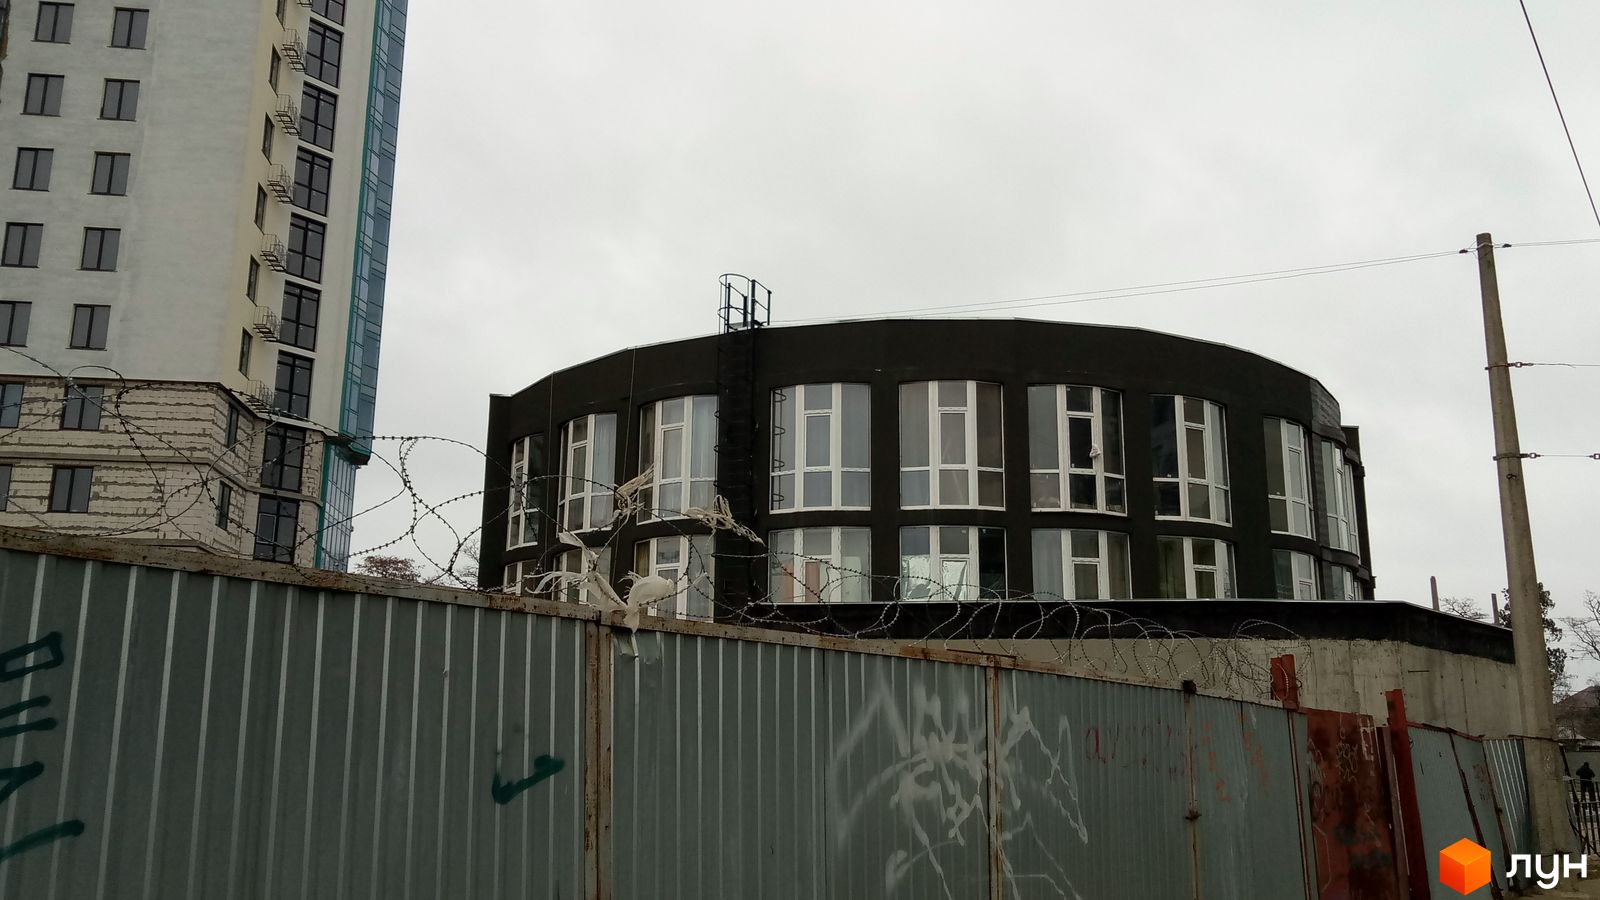 Моніторинг будівництва ЖК The Apartments - Ракурс 1, січень 2019